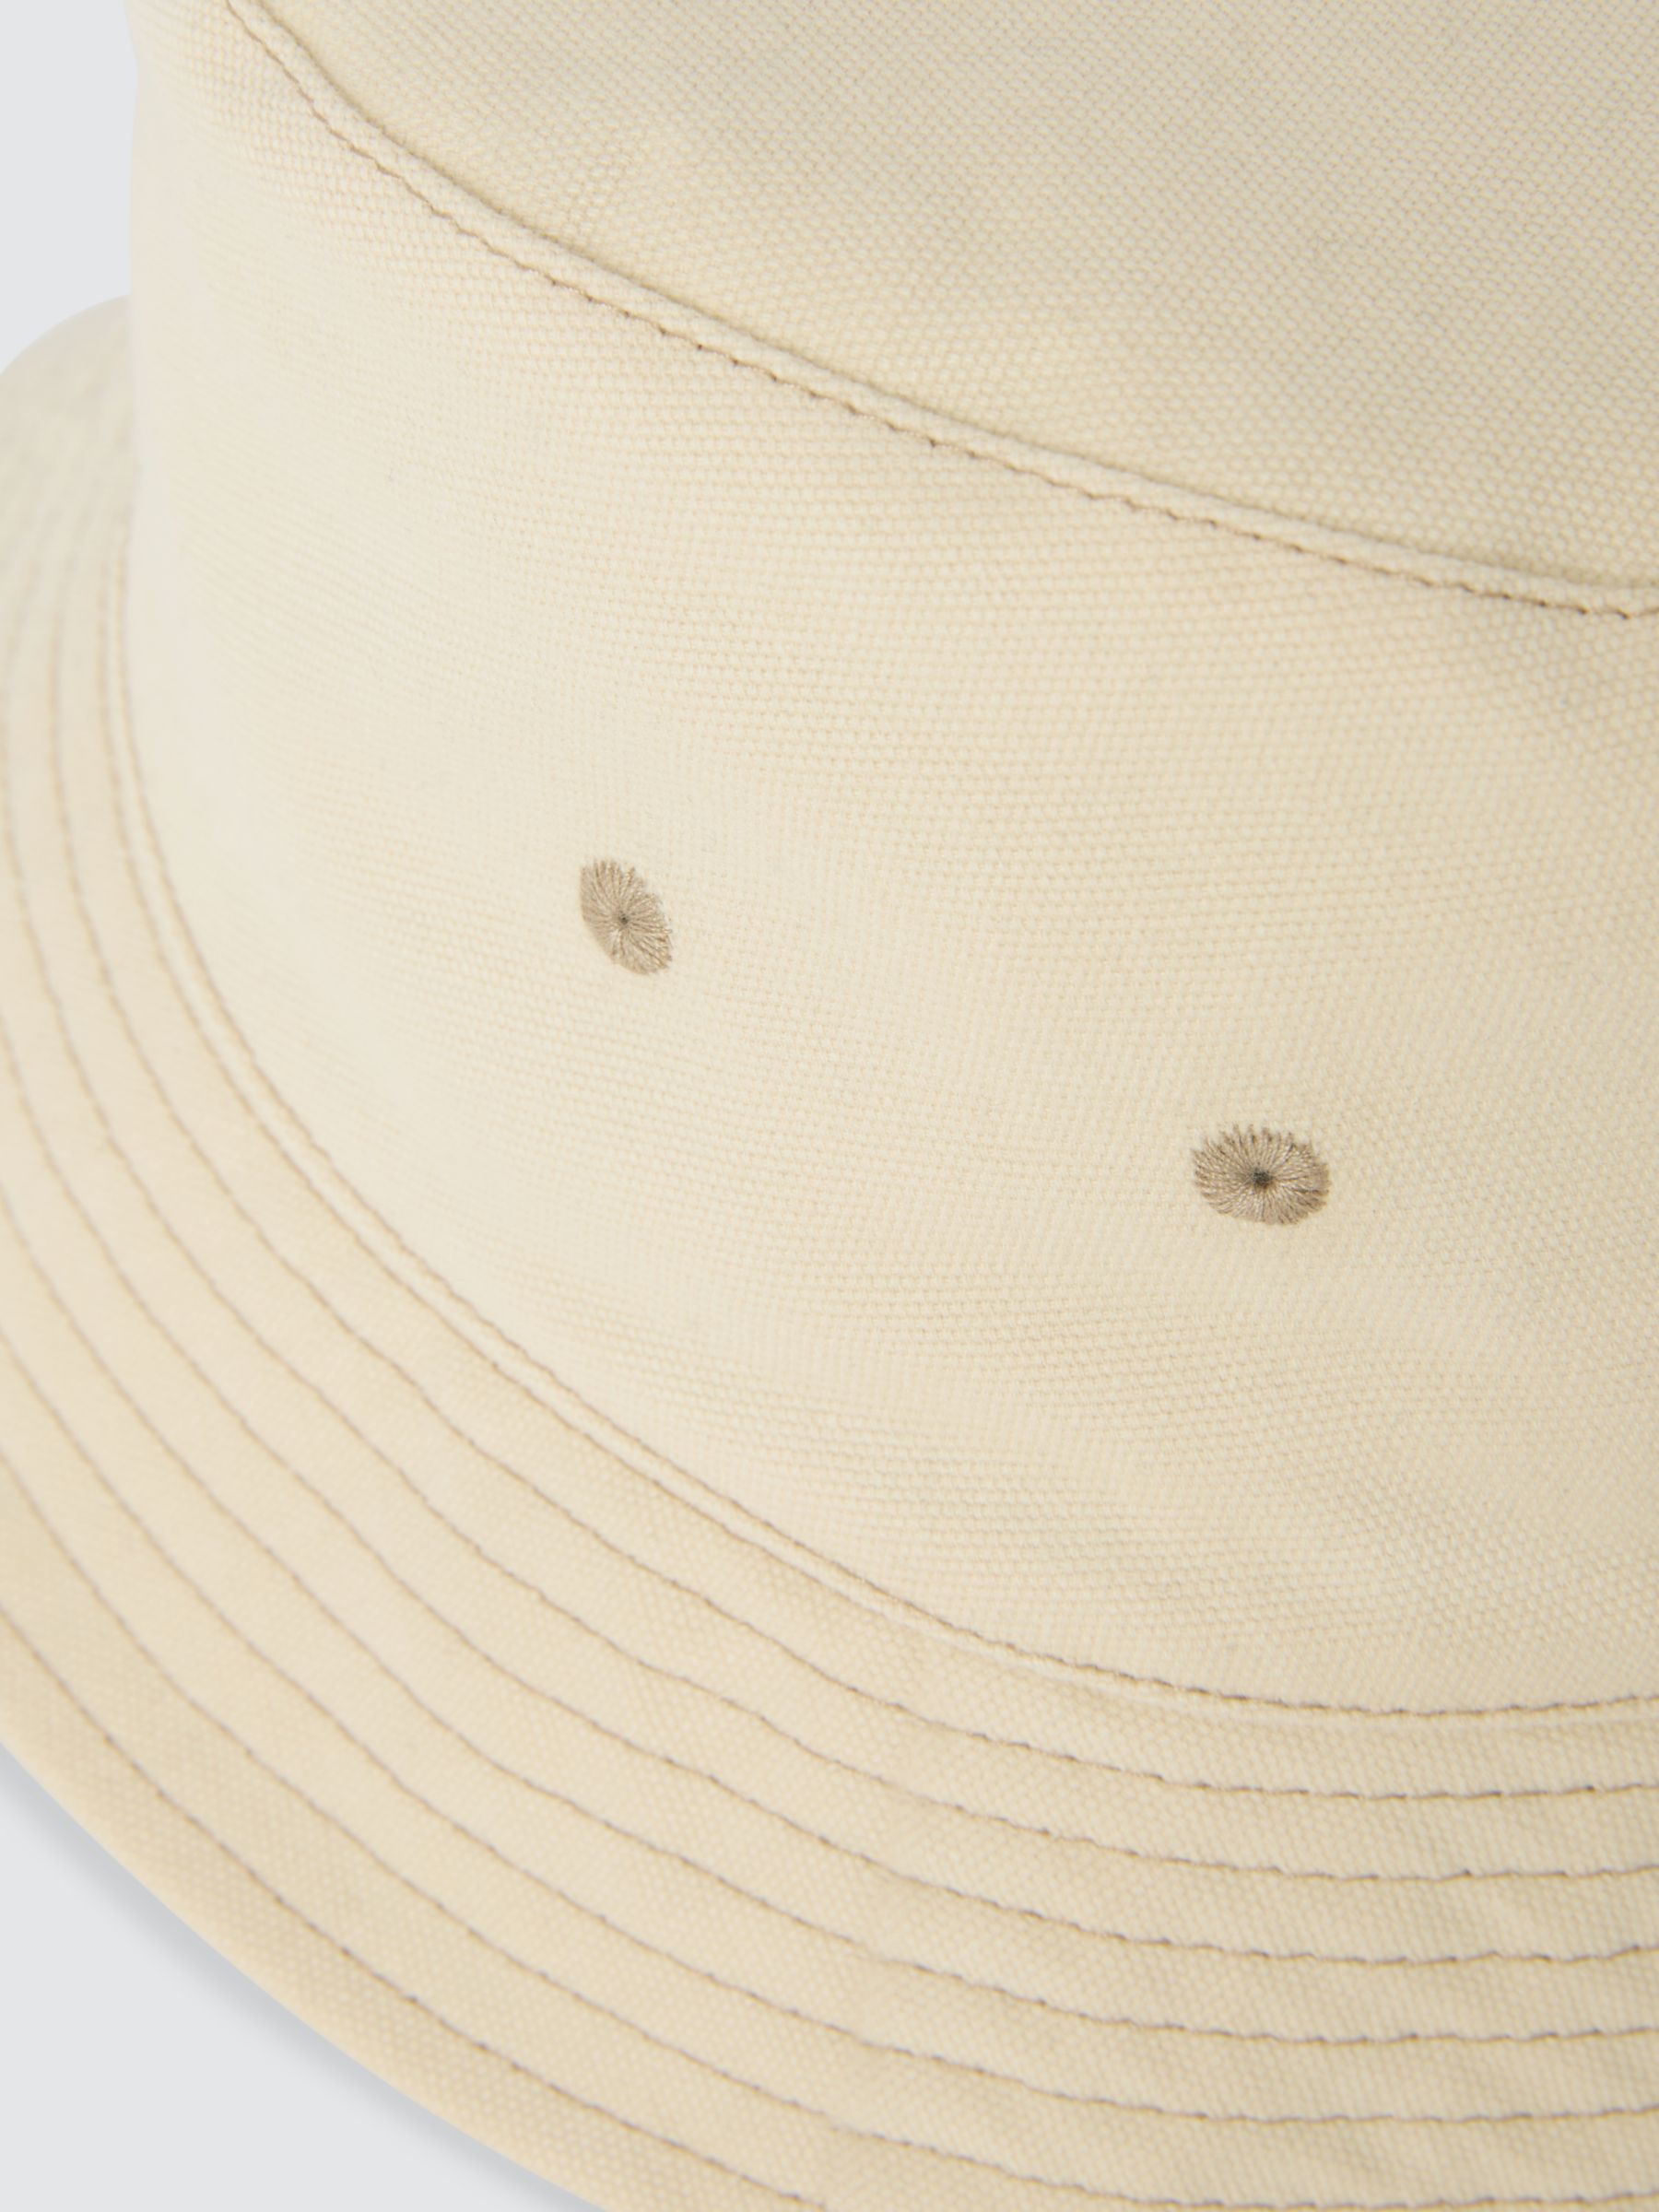 John Lewis ANYDAY Cotton Bucket Hat, Cream, S-M